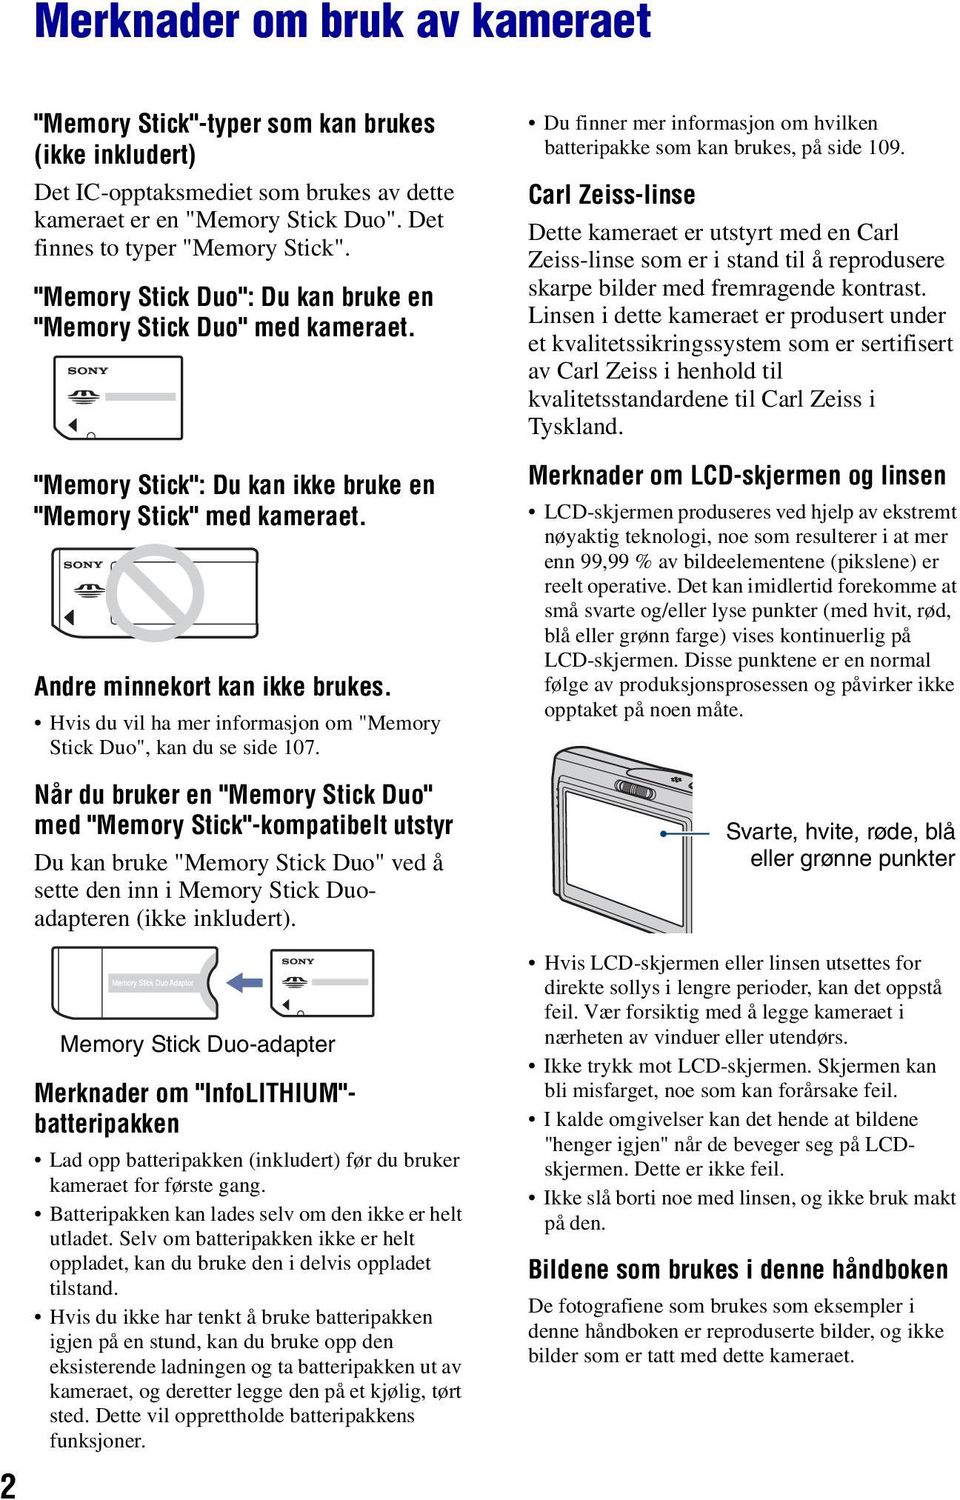 Hvis du vil ha mer informasjon om "Memory Stick Duo", kan du se side 107.